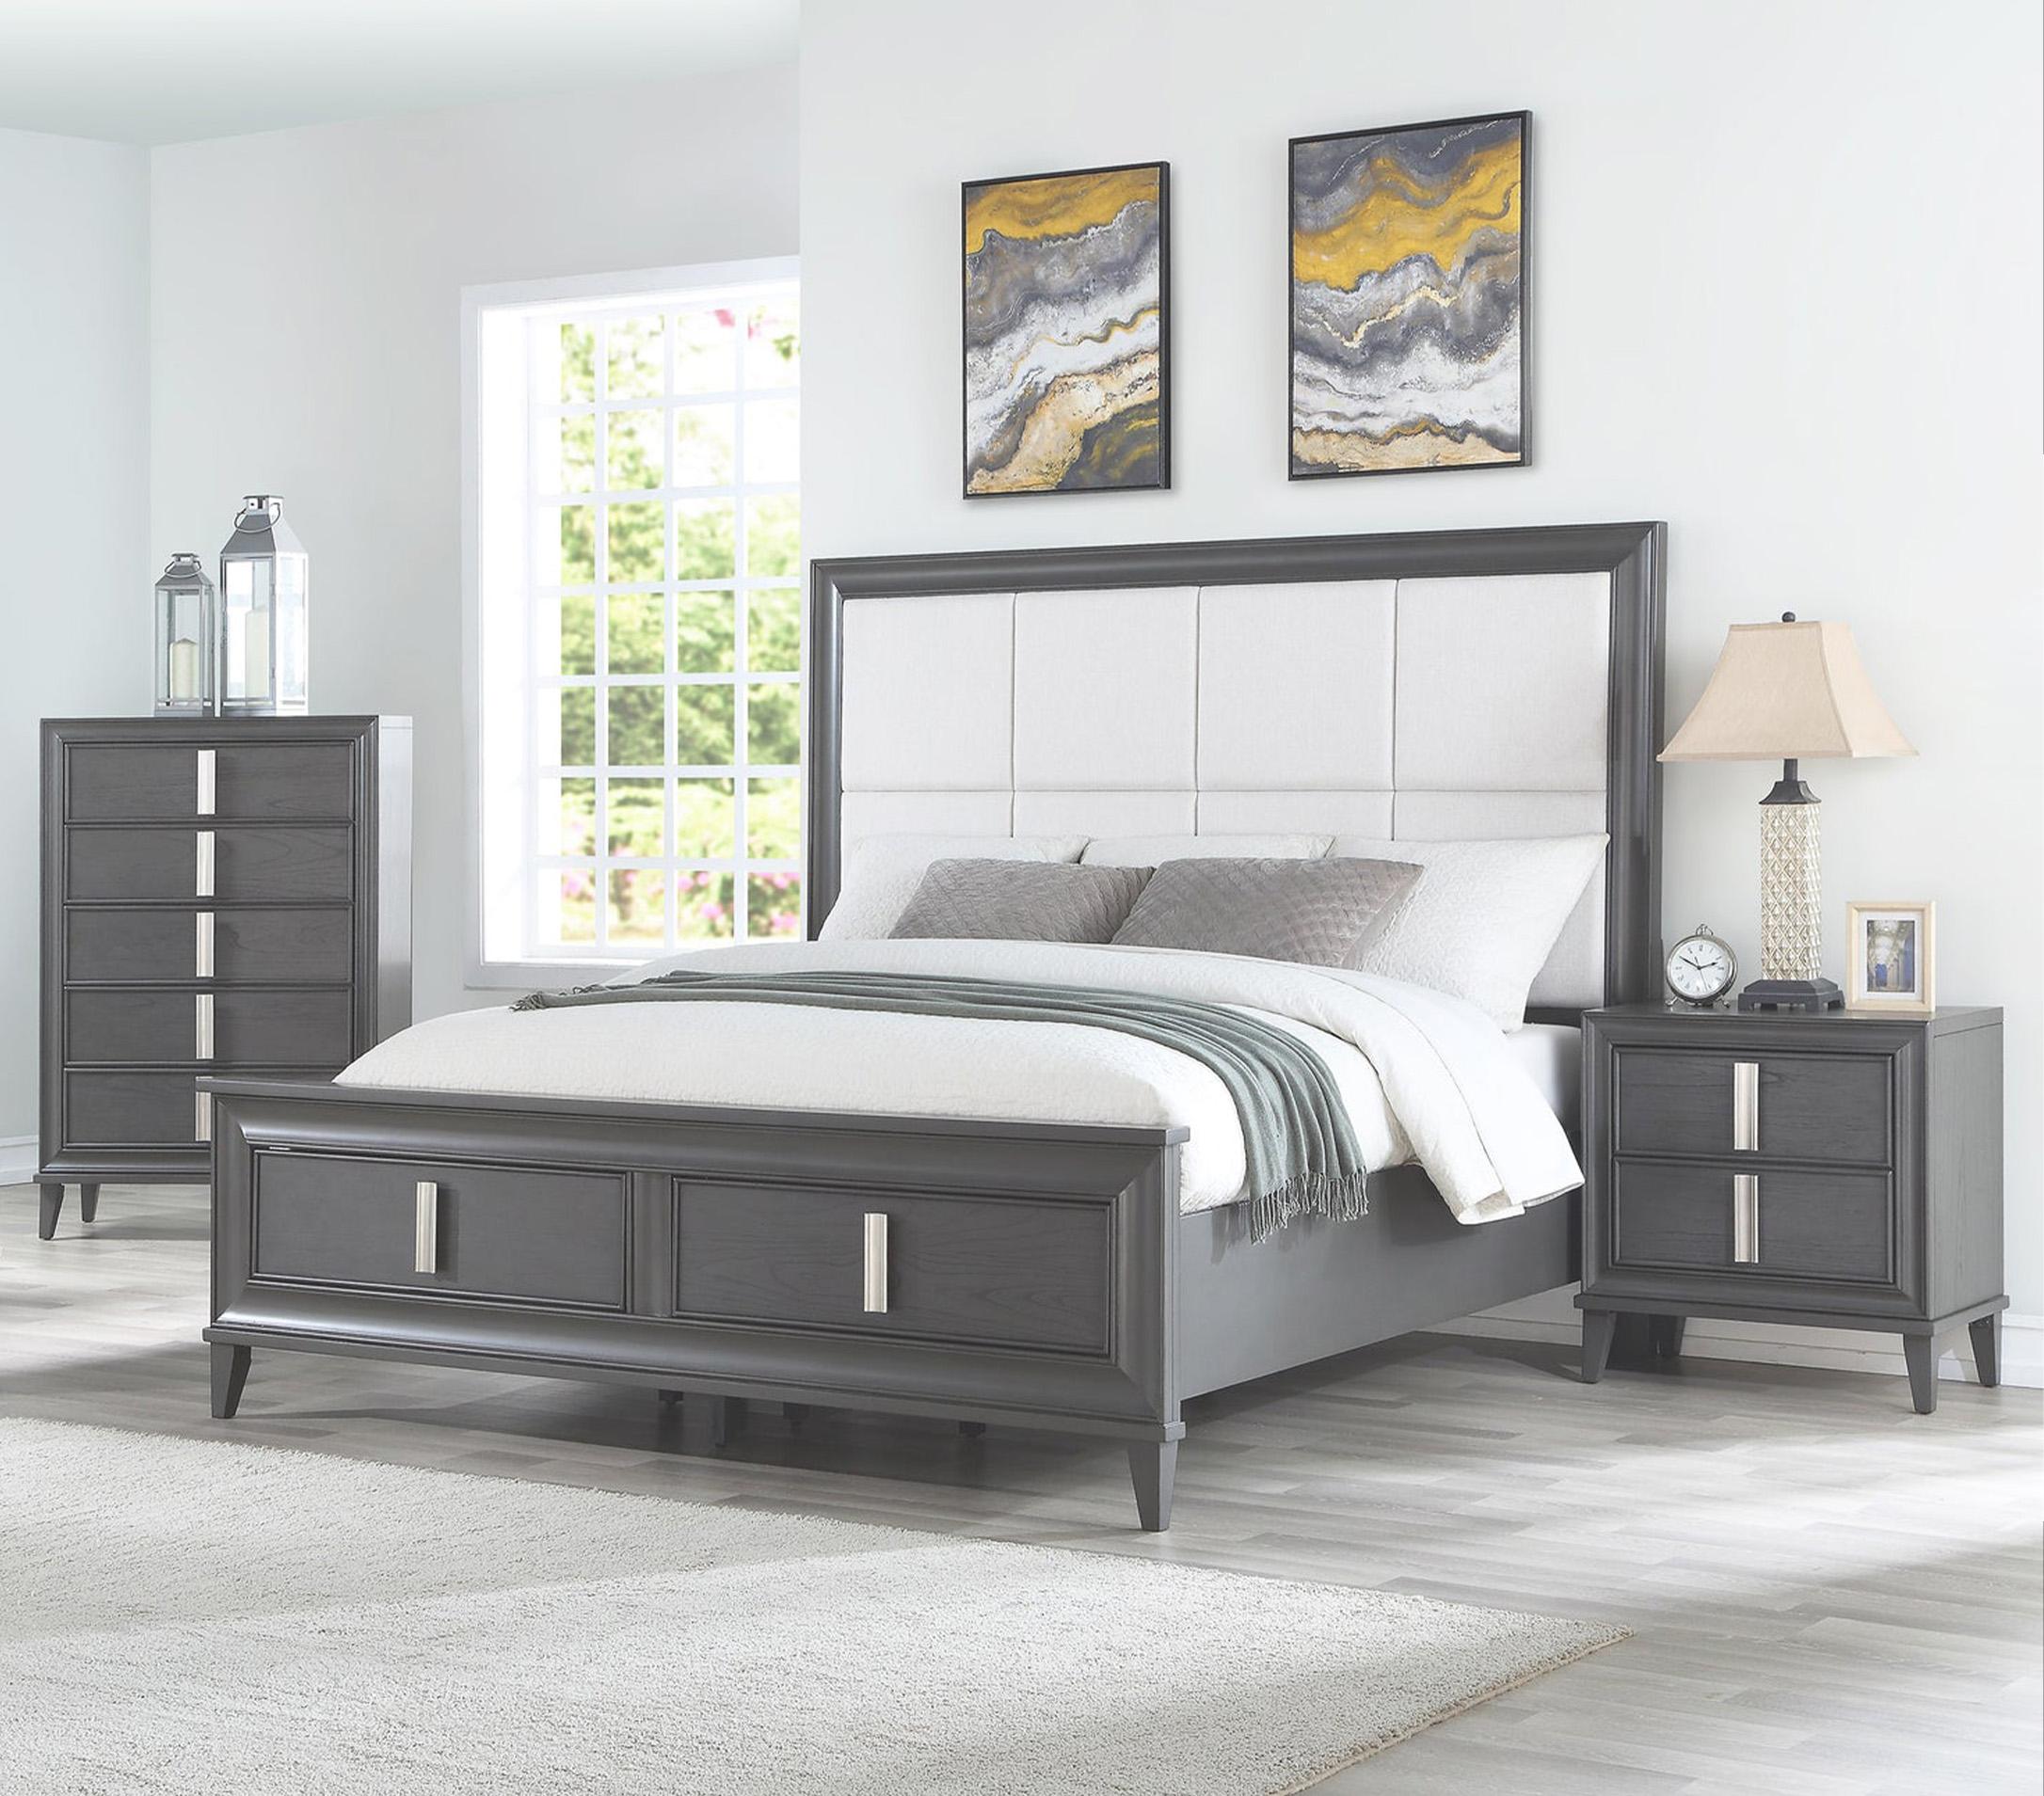 Contemporary, Modern Storage Bedroom Set LORRAINE 8171-01Q-Set-3 in Dark Gray, Cream Fabric